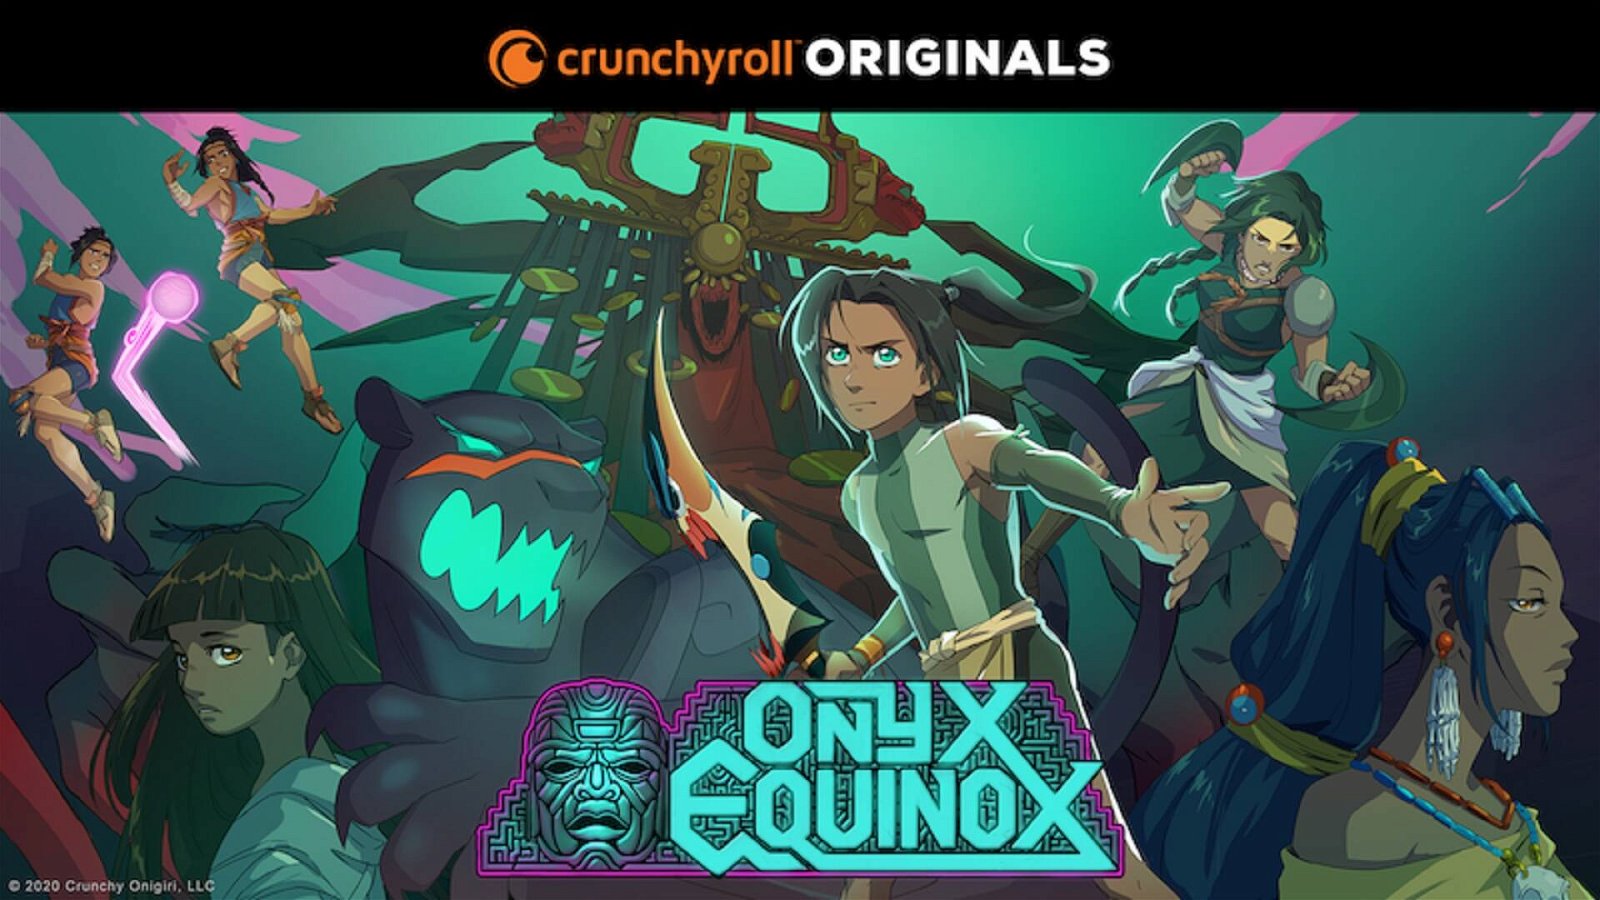 Immagine di Onyx Equinox - trailer del nuovo Crunchyroll Originals